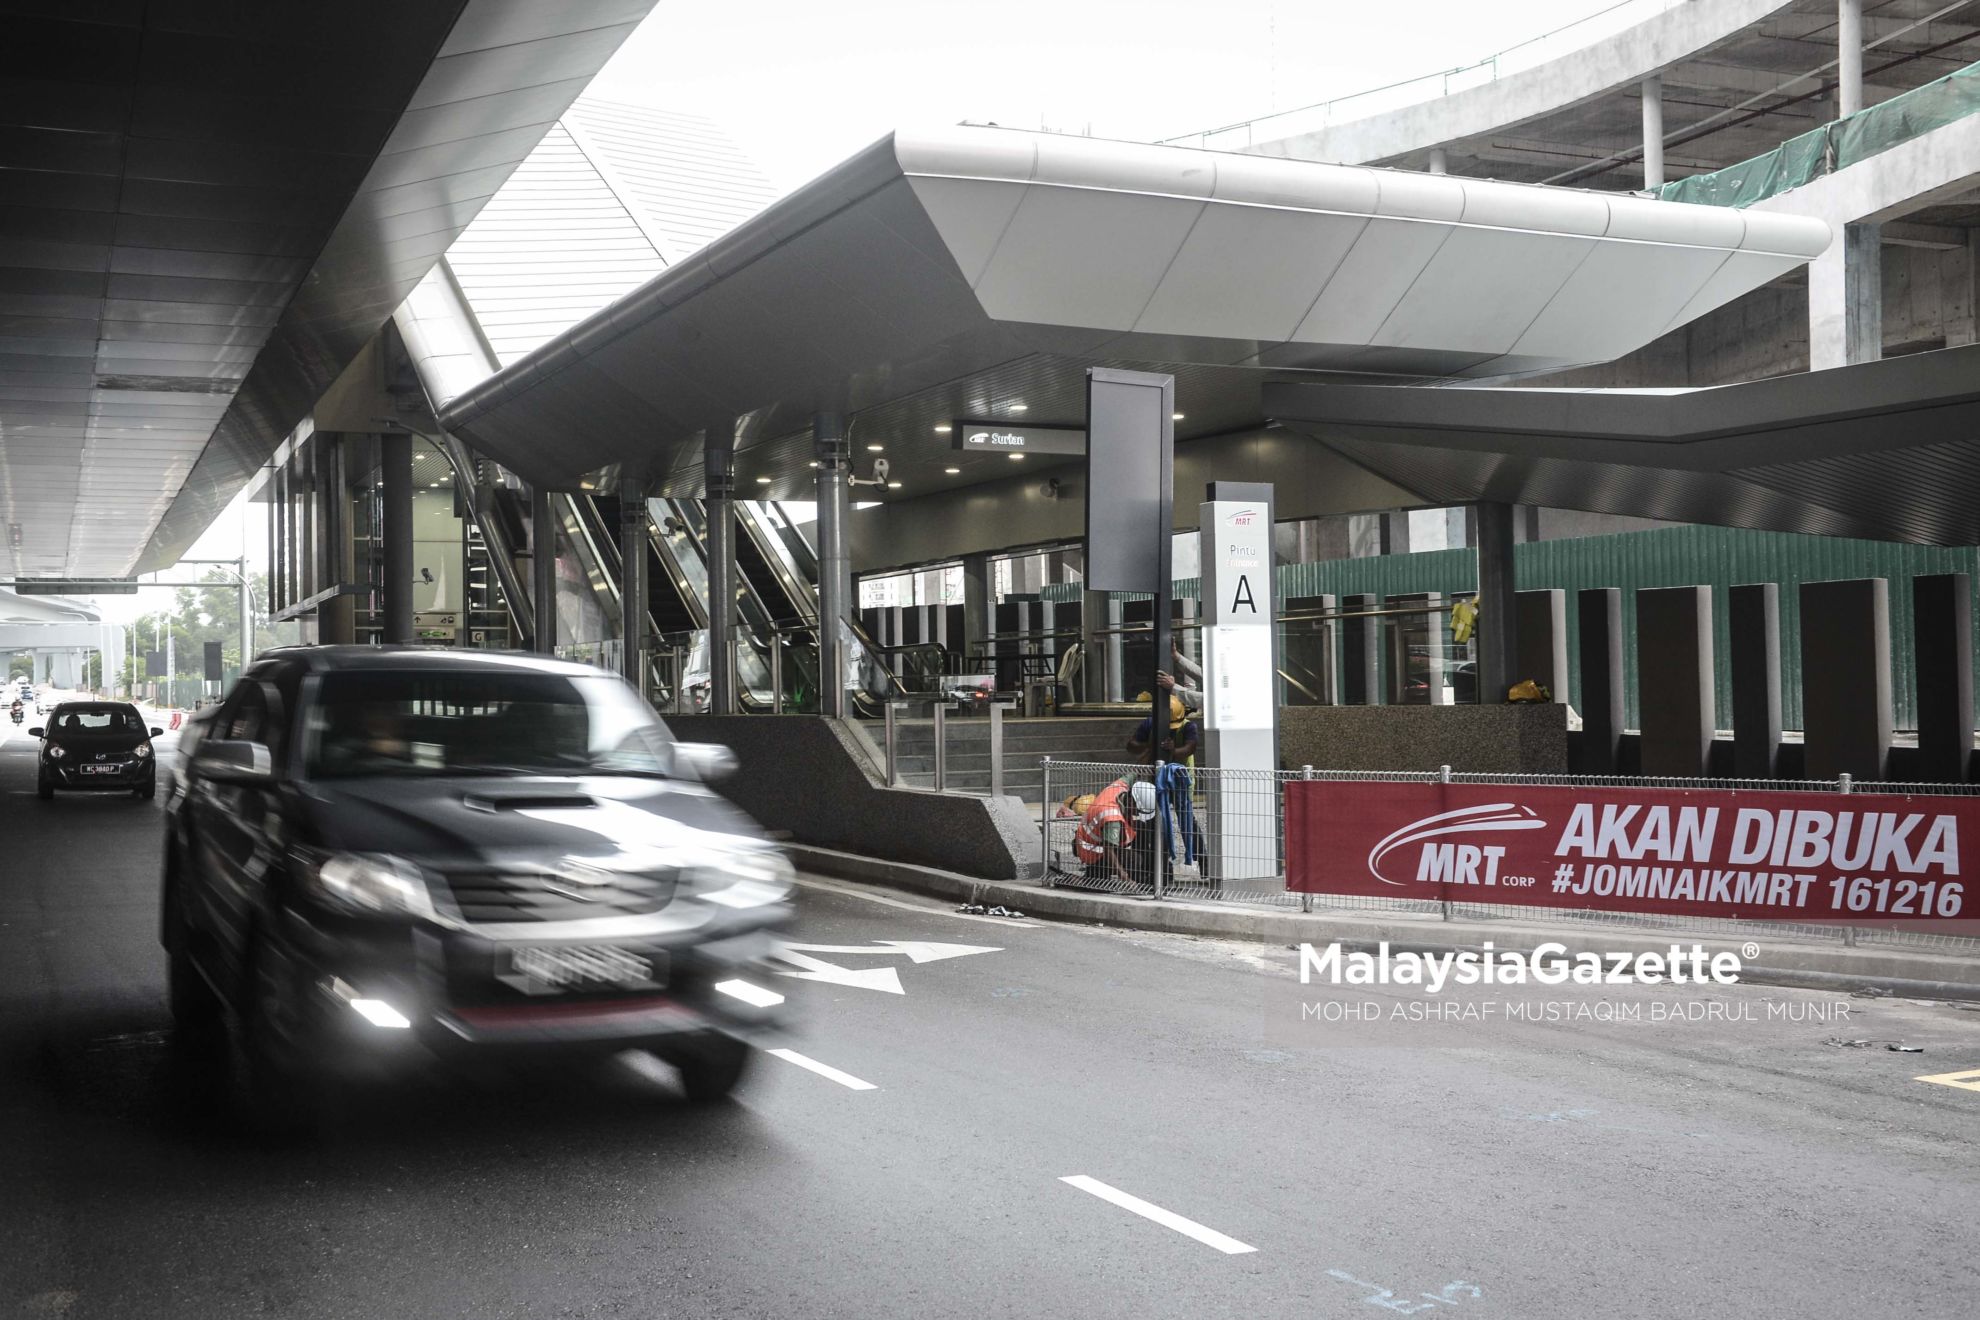 Tinjauan lensa Malaysia Gazette, persiapan akhir sebelum pelancaran MRT Sungai Buloh-Kajang yang akan dilancarkan oleh Perdana Menteri, Datuk Seri Najib Tun Abdul Razak di Stesen MRT Surian, Damansara. foto ASHRAF MUSTAQIM BADRUL MUNIR, 14 DISEMBER 2016.